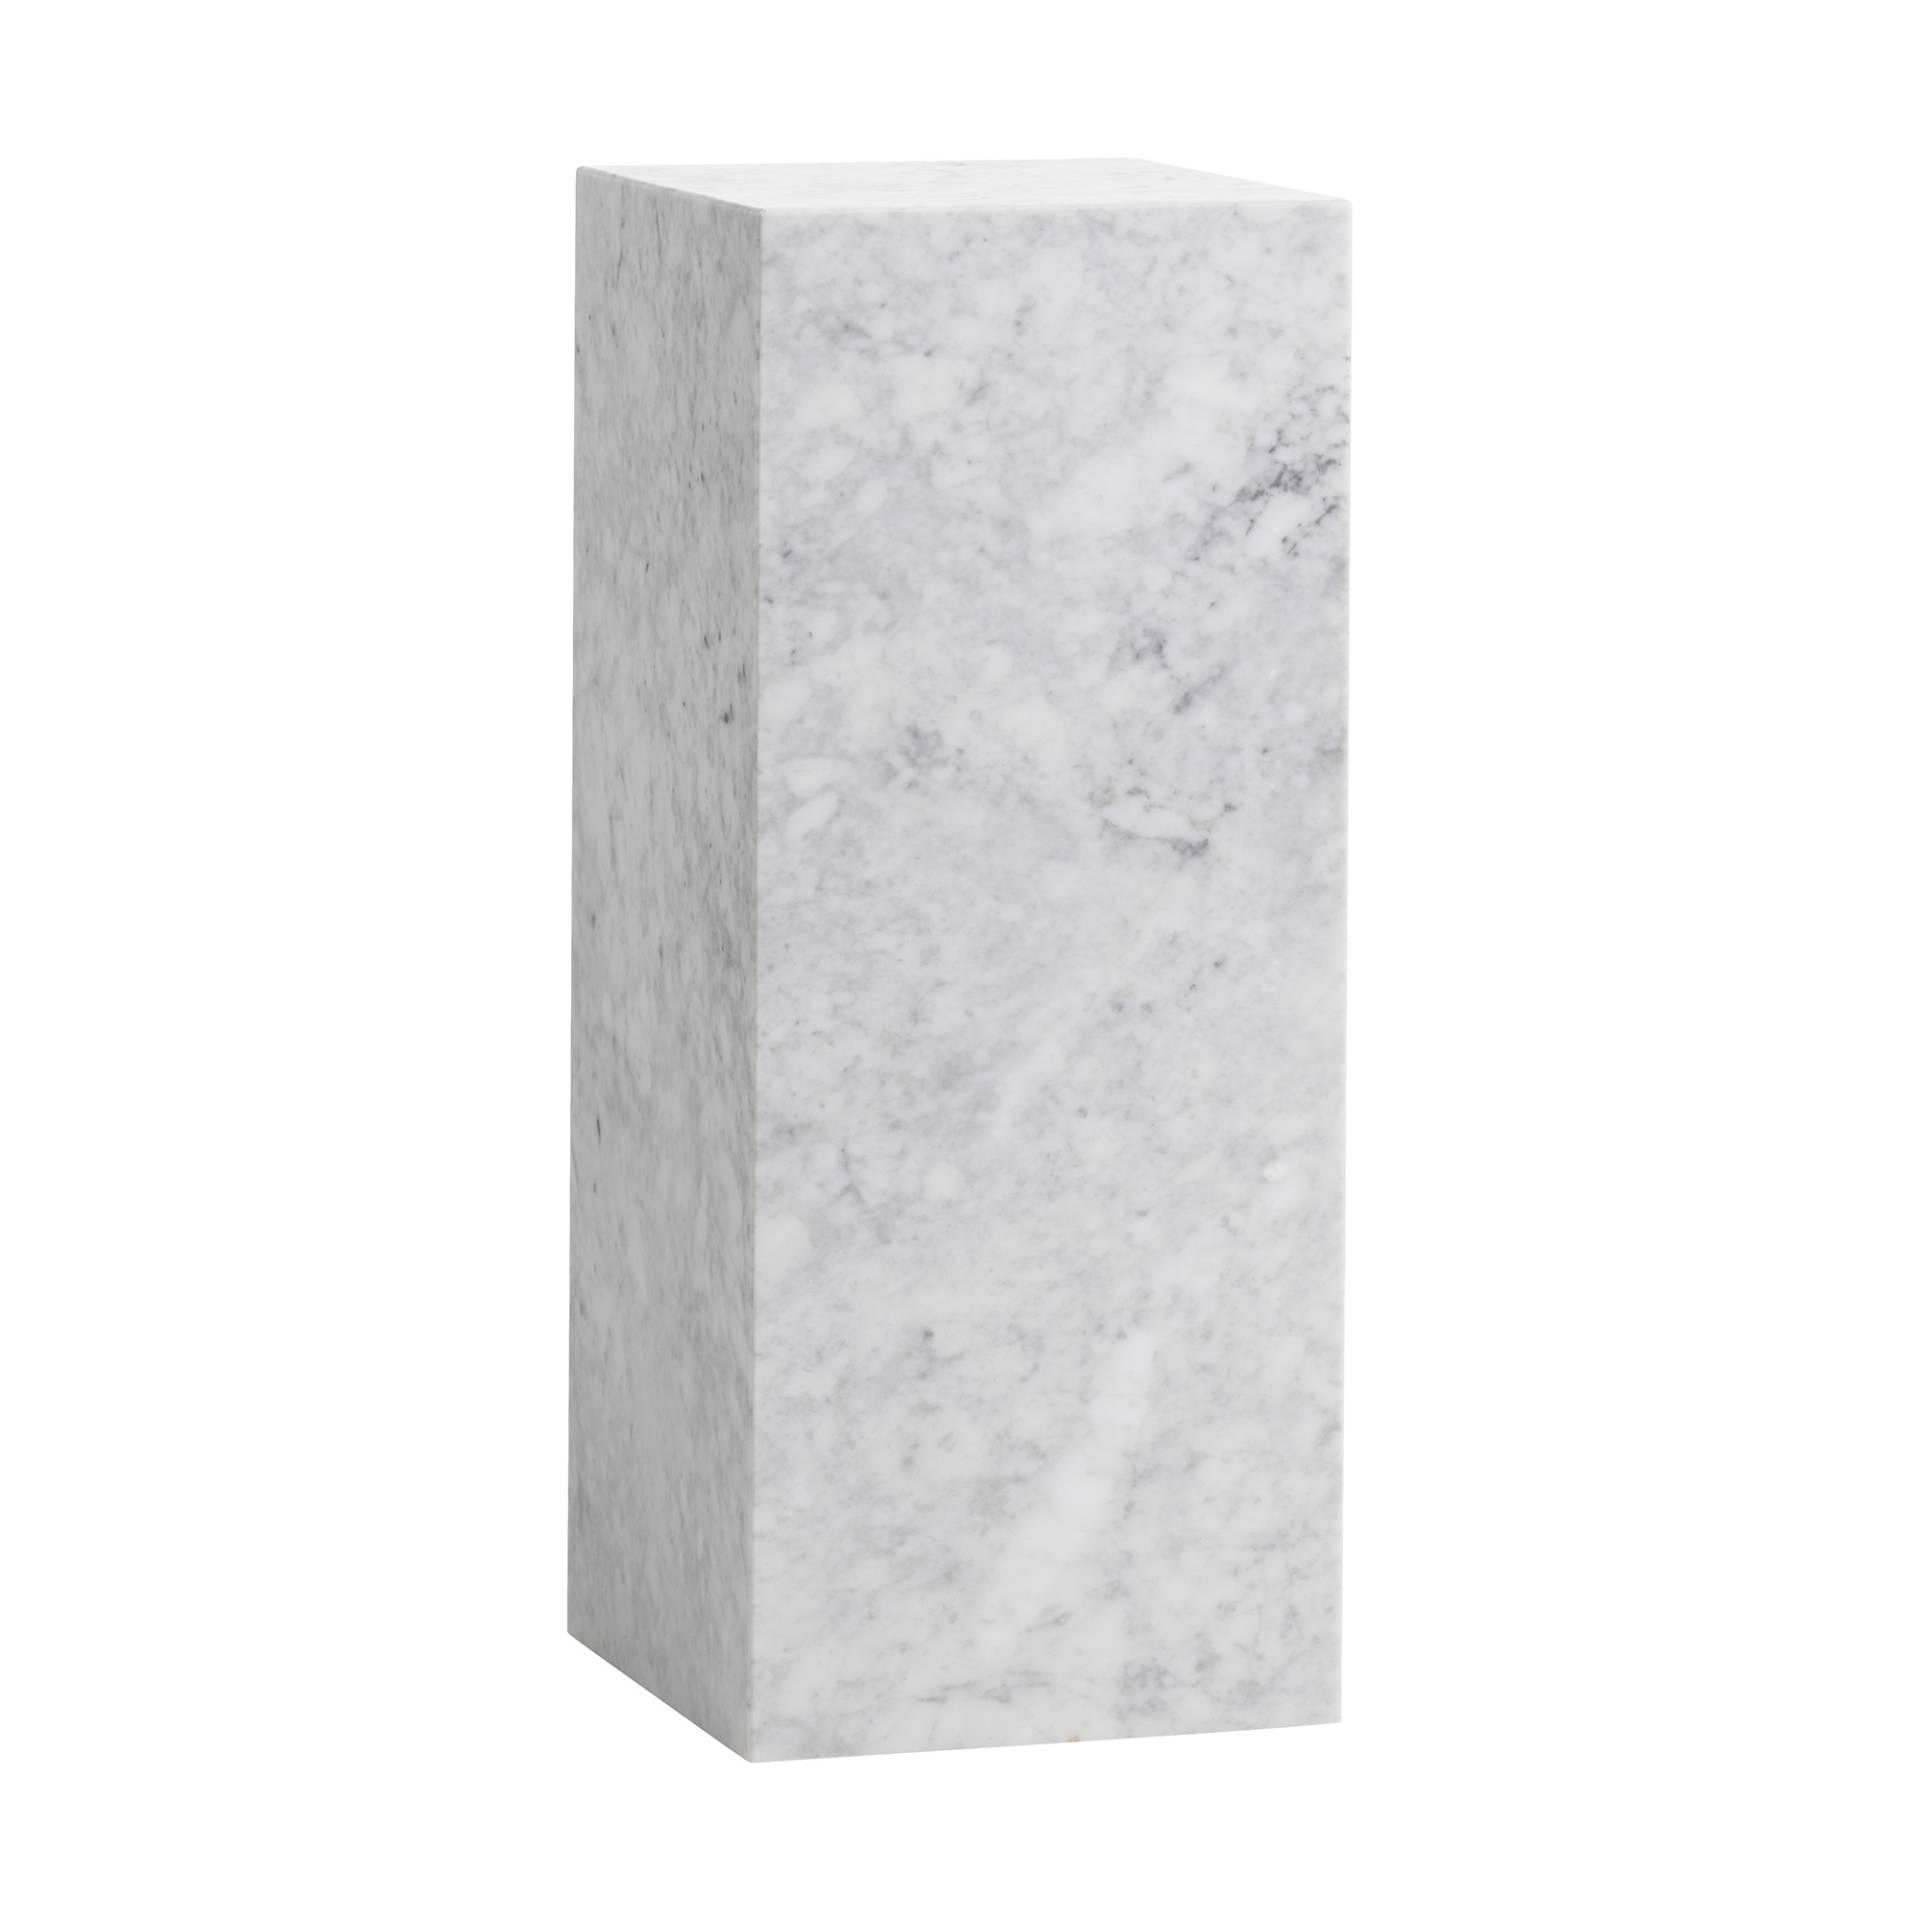 Audo - Plinth Pedestal Beistelltisch H 75cm - weiß/Carrara/LxBxH 30x30x75cm von Audo